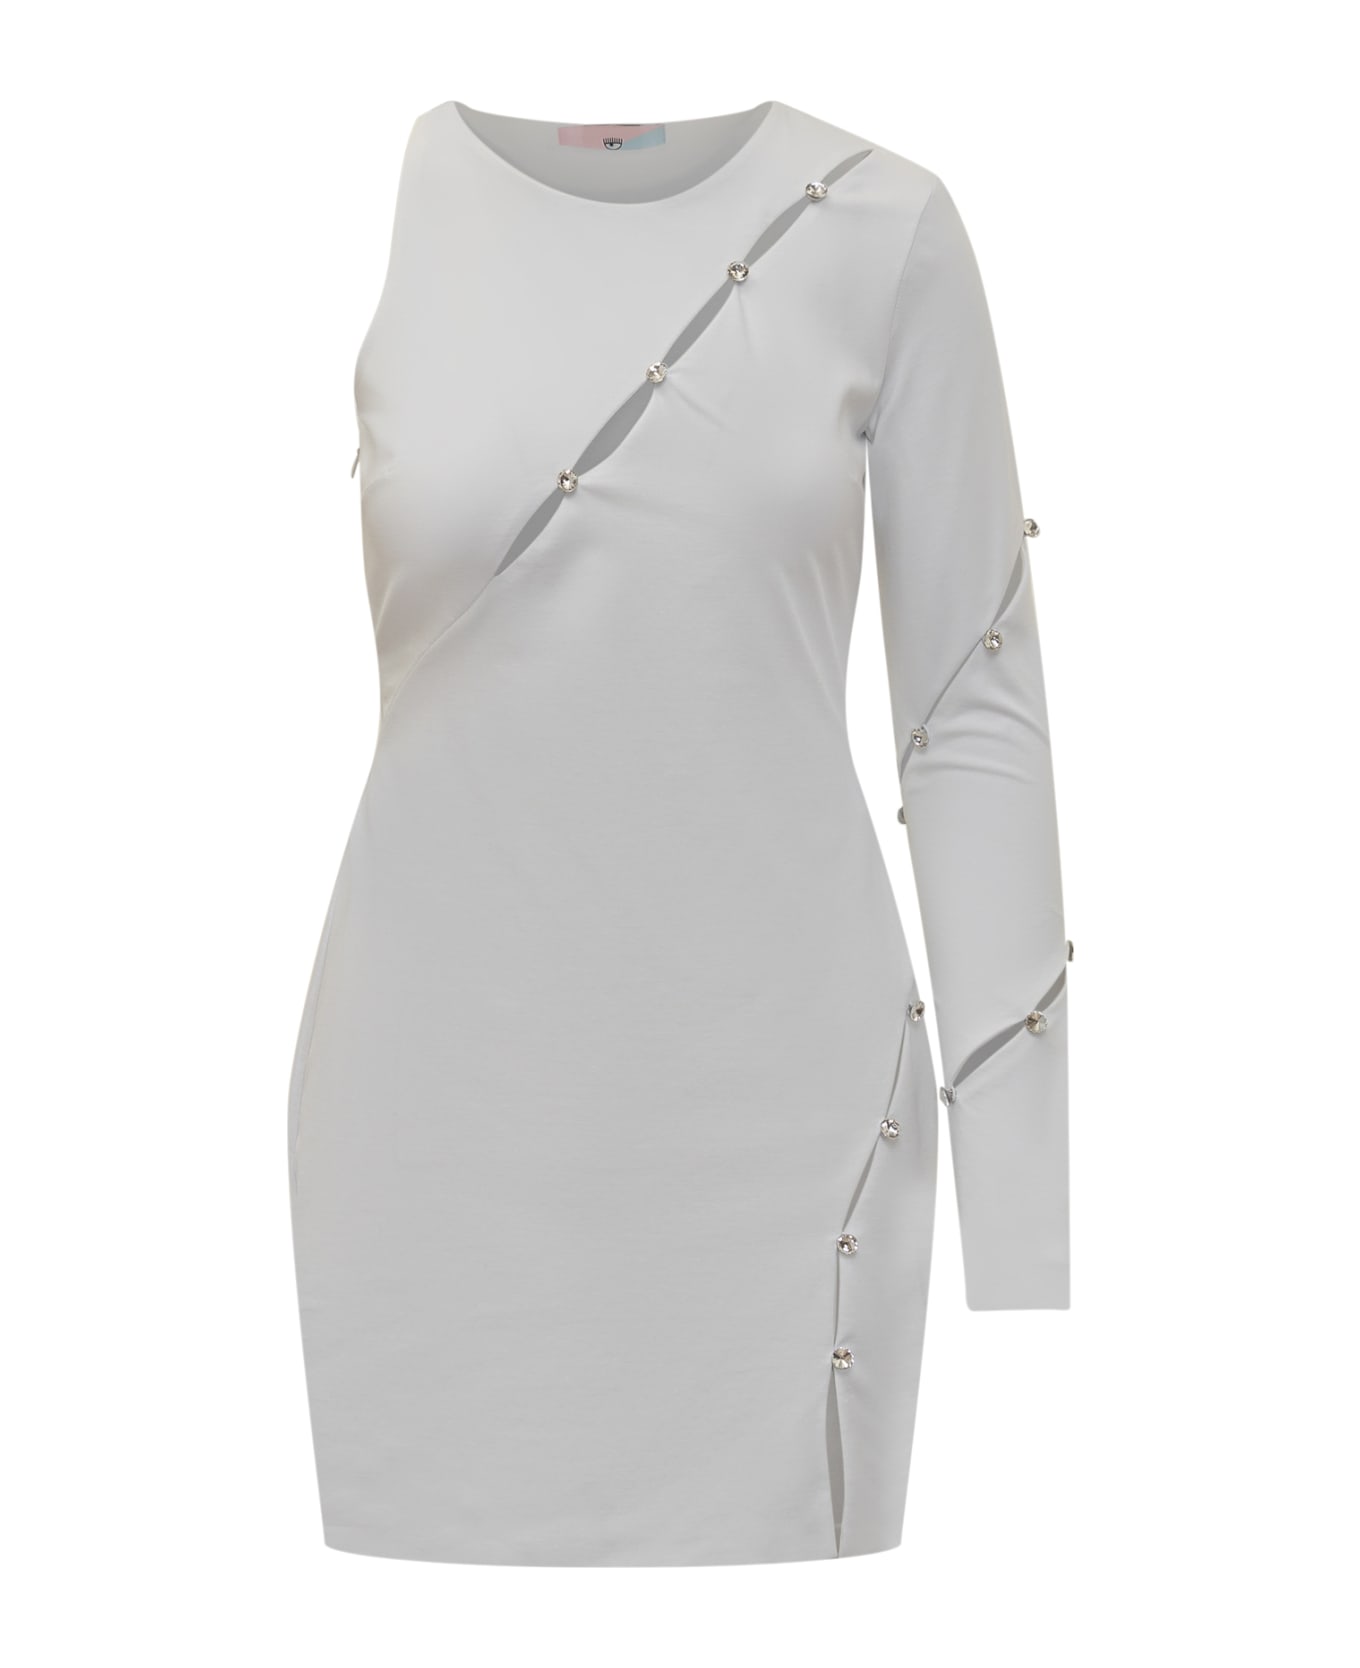 Chiara Ferragni Hole 926 Dress - WHITE